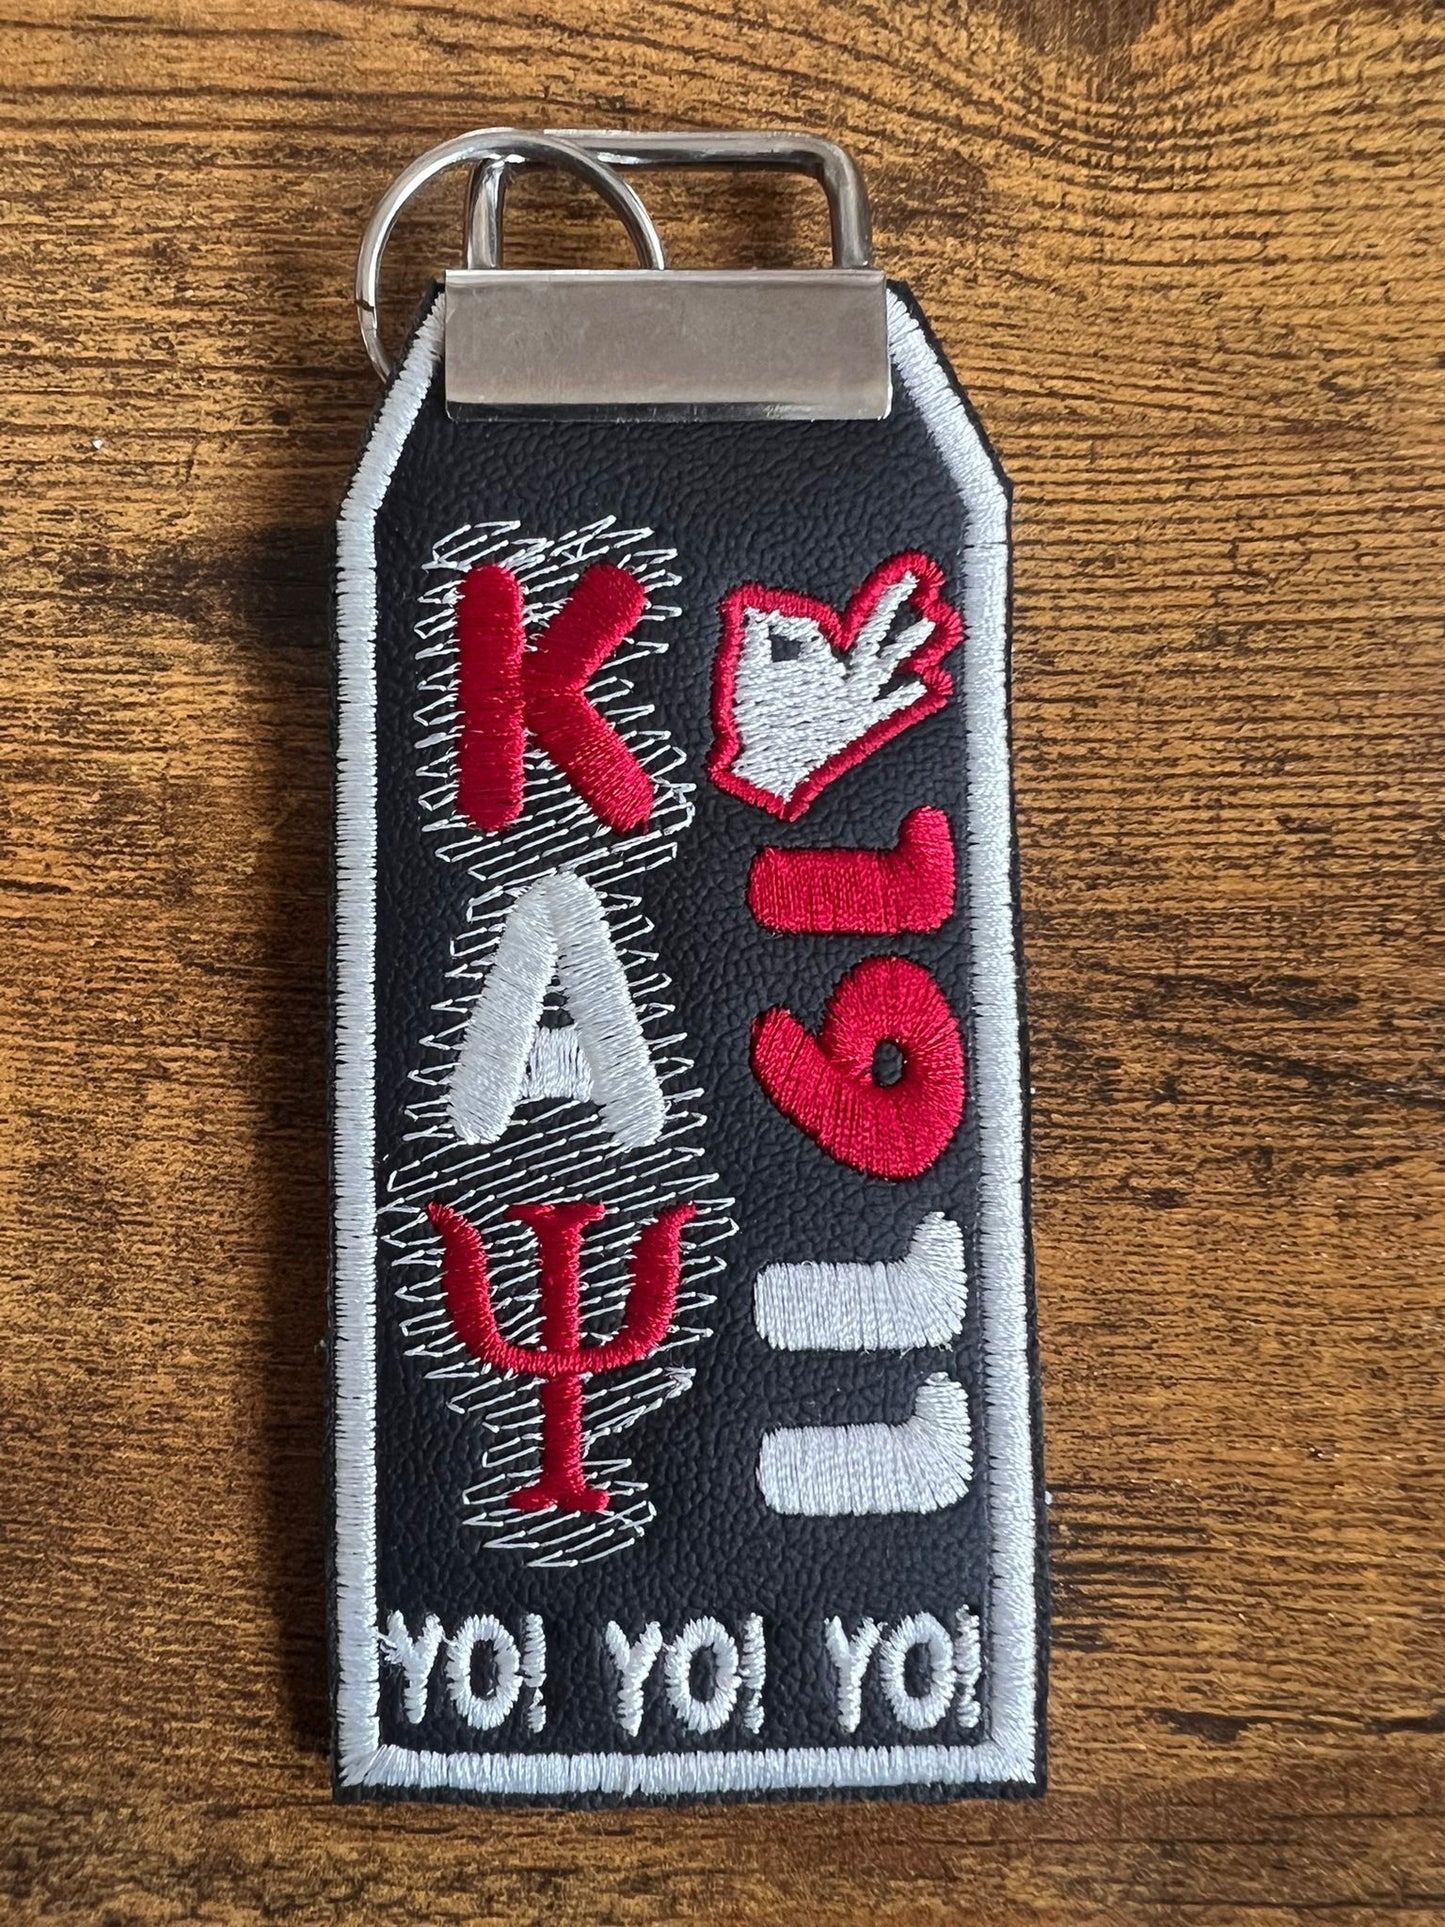 Kappa Alpha Psi Bag Tag (White Border)/KeyRing